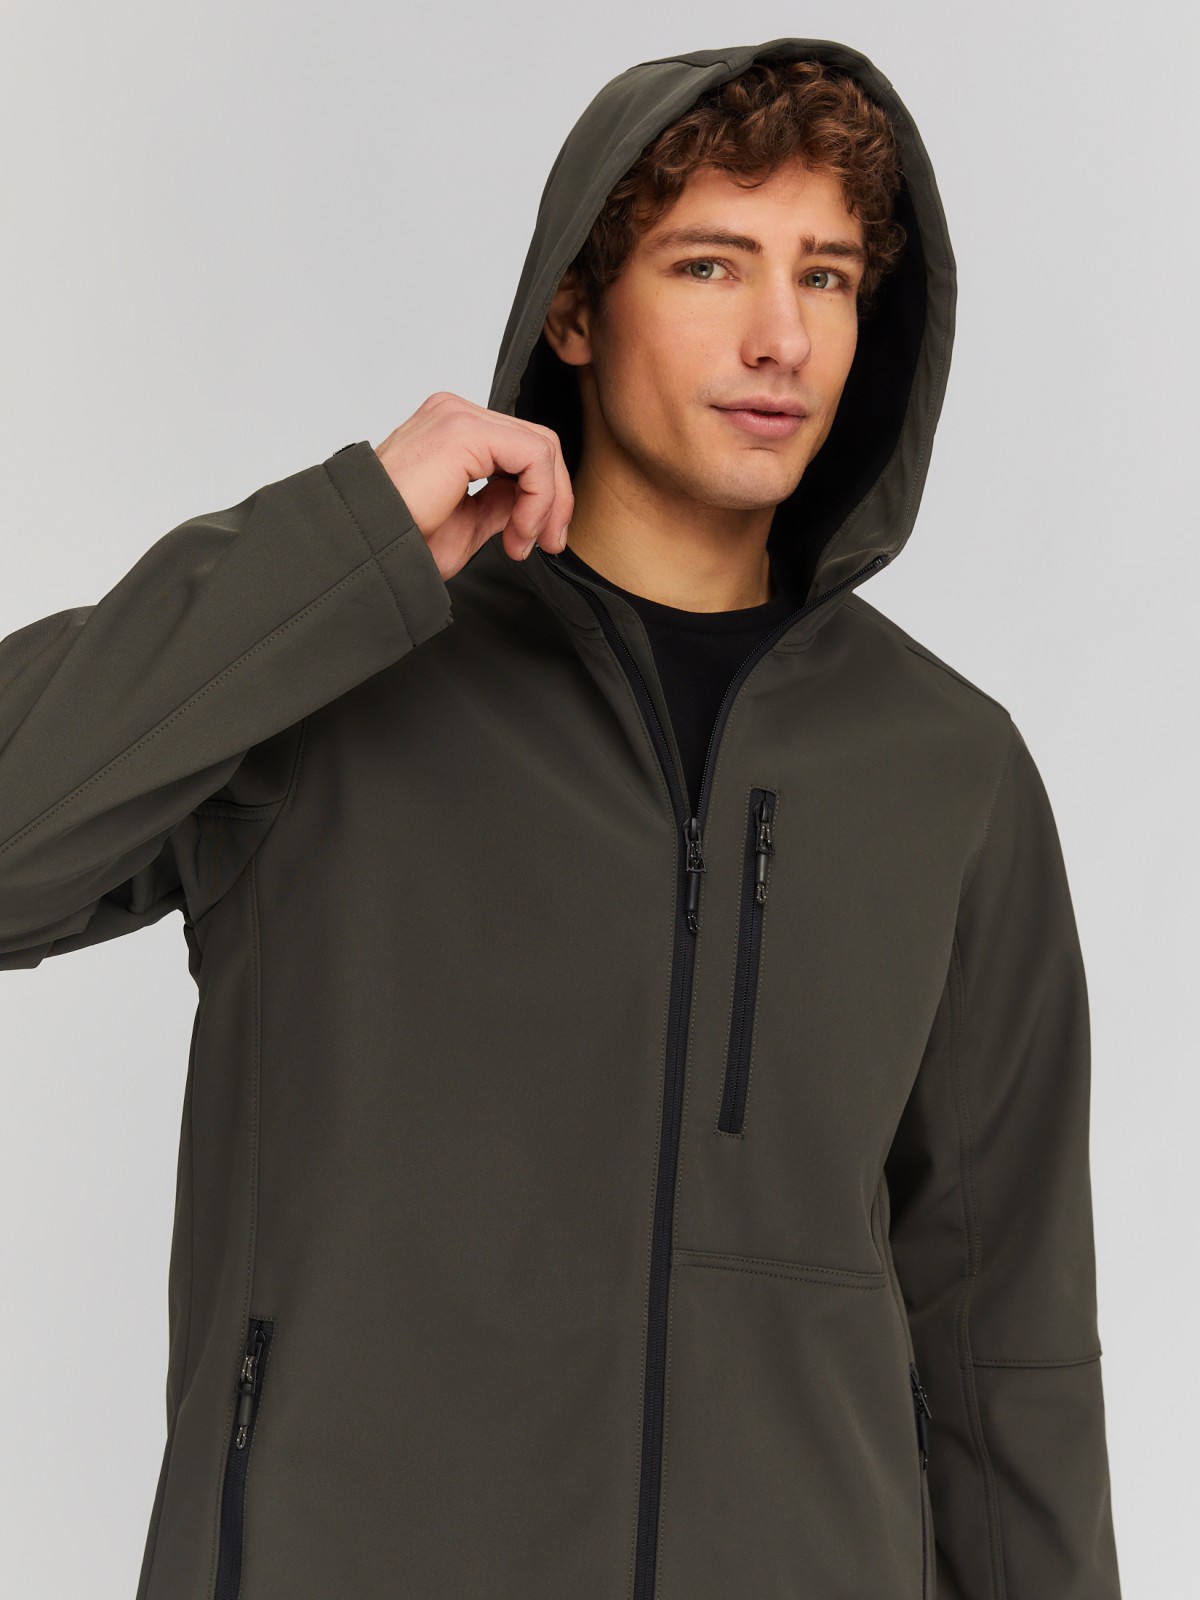 Лёгкая куртка-ветровка с капюшоном zolla 014135602014, цвет хаки, размер S - фото 4